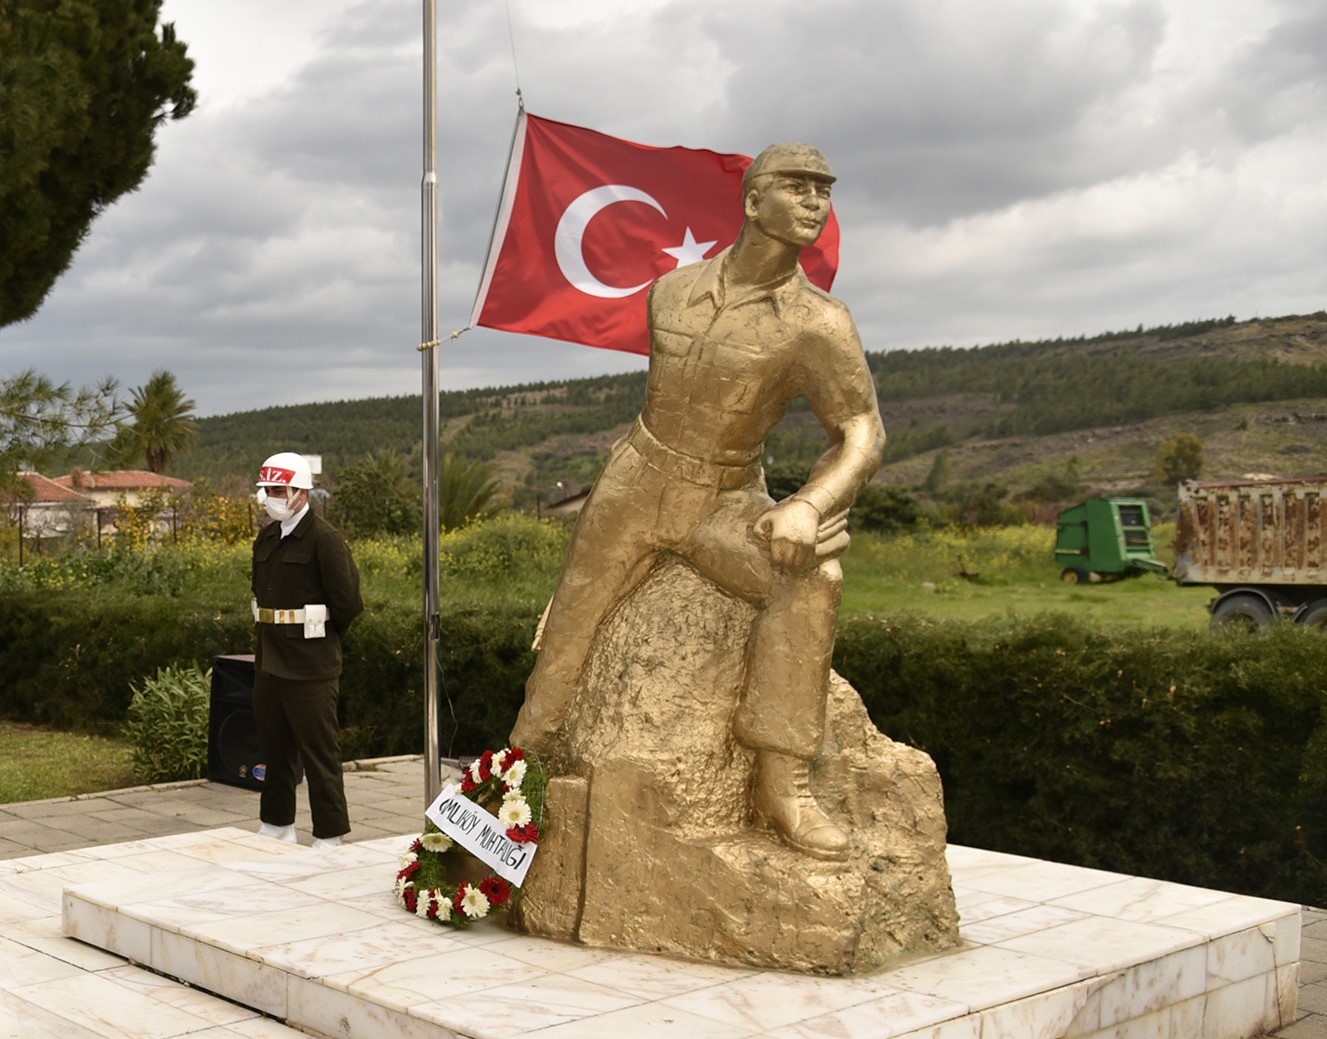 Gaziveren ve Çamlıköy Direnişleri ve şehitler yarın anılıyor